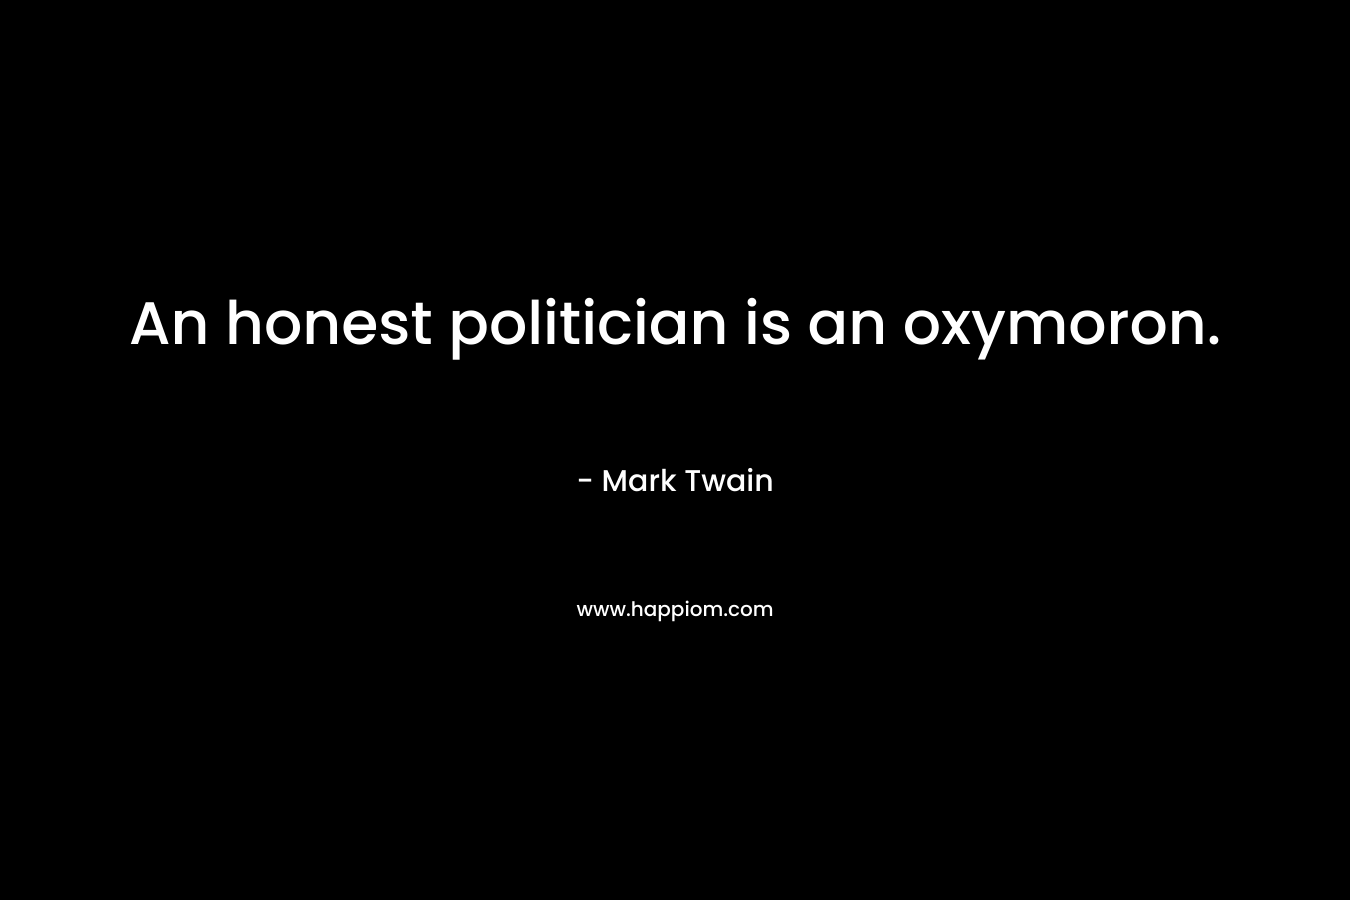 An honest politician is an oxymoron. – Mark Twain